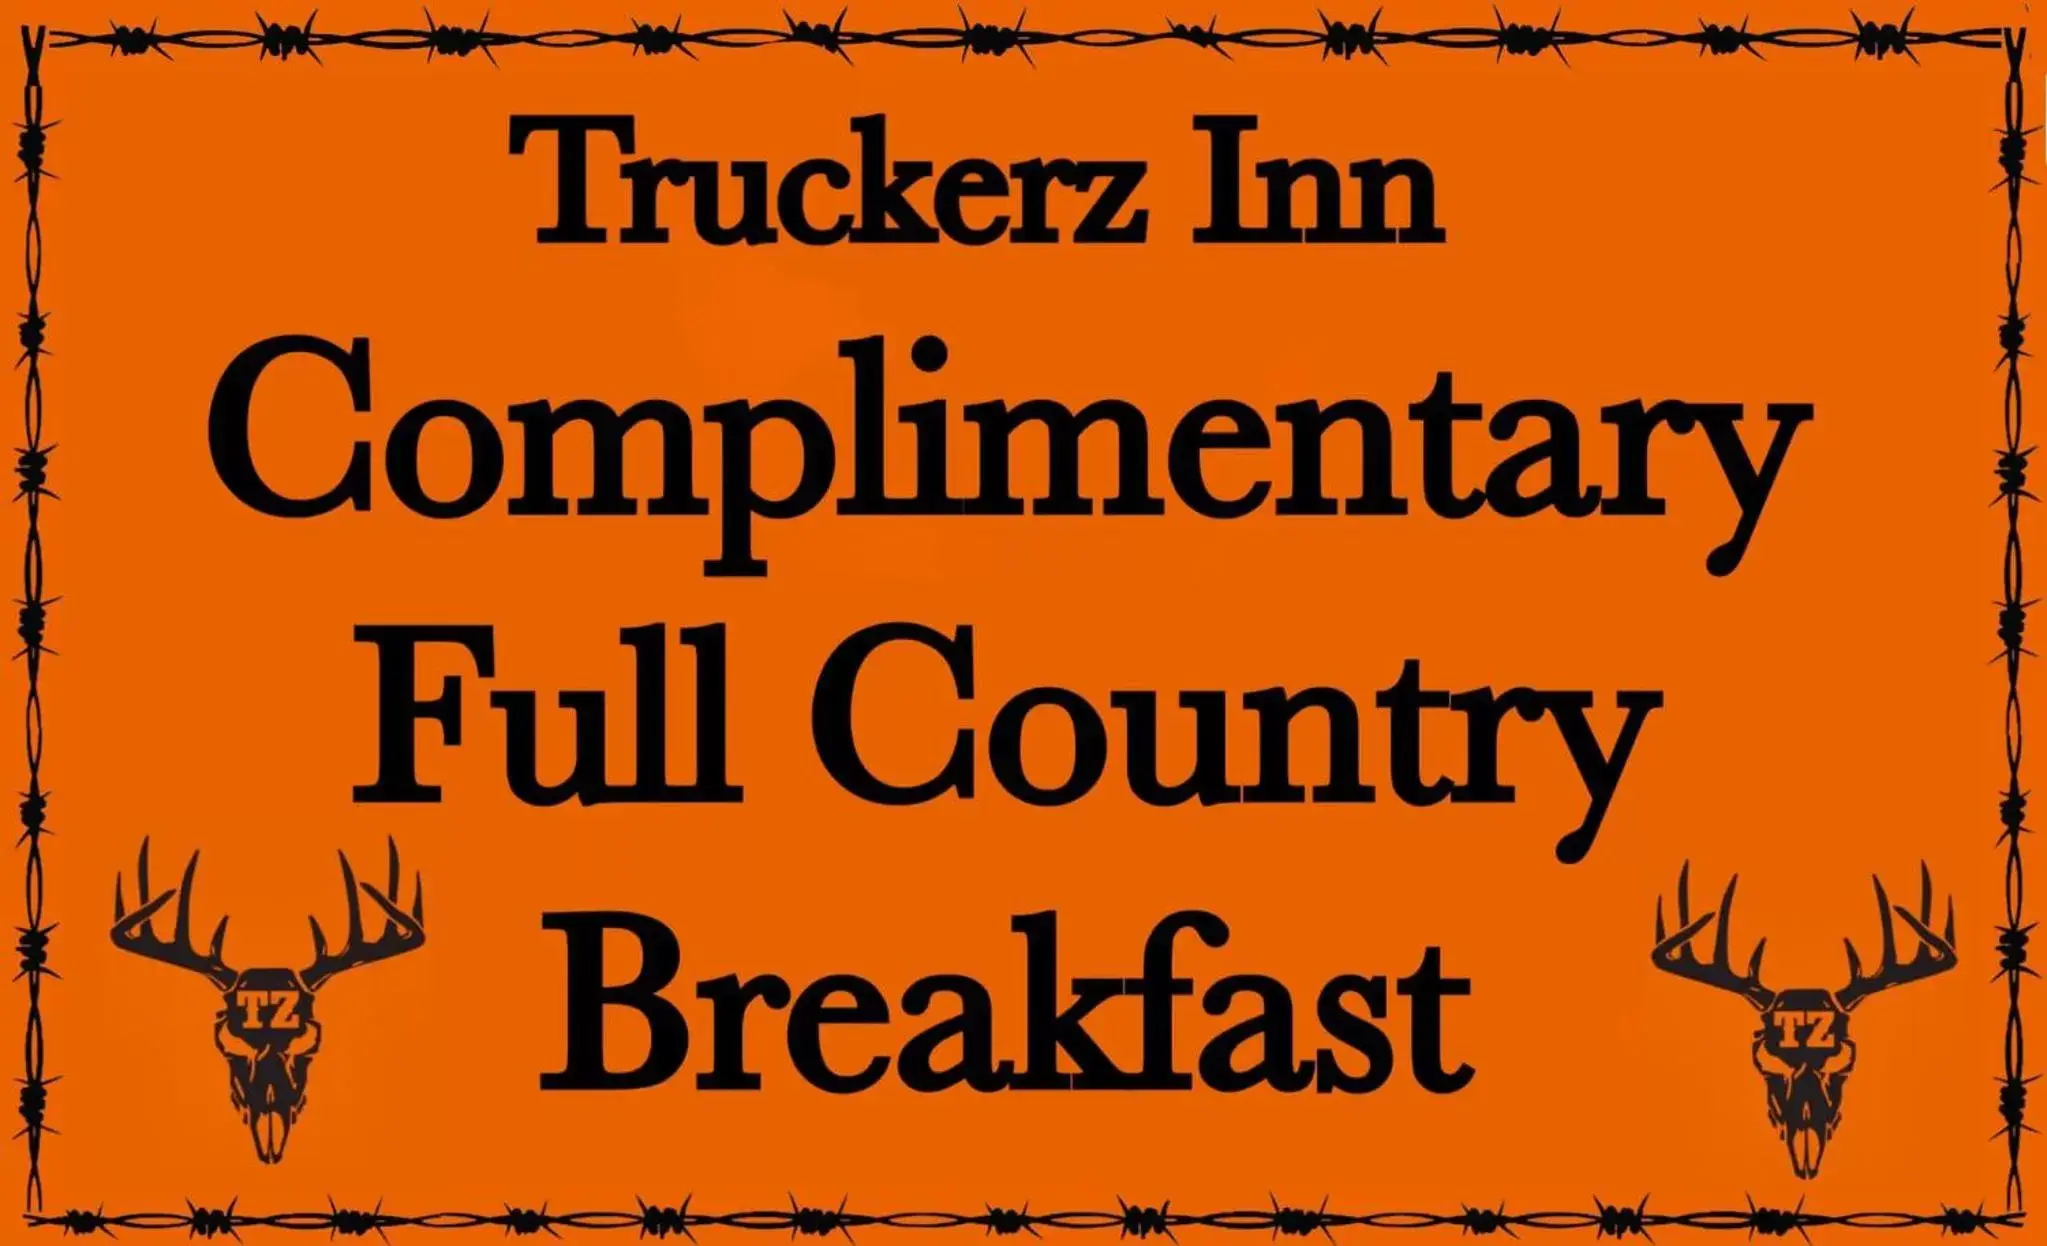 Breakfast in Truckerz Inn